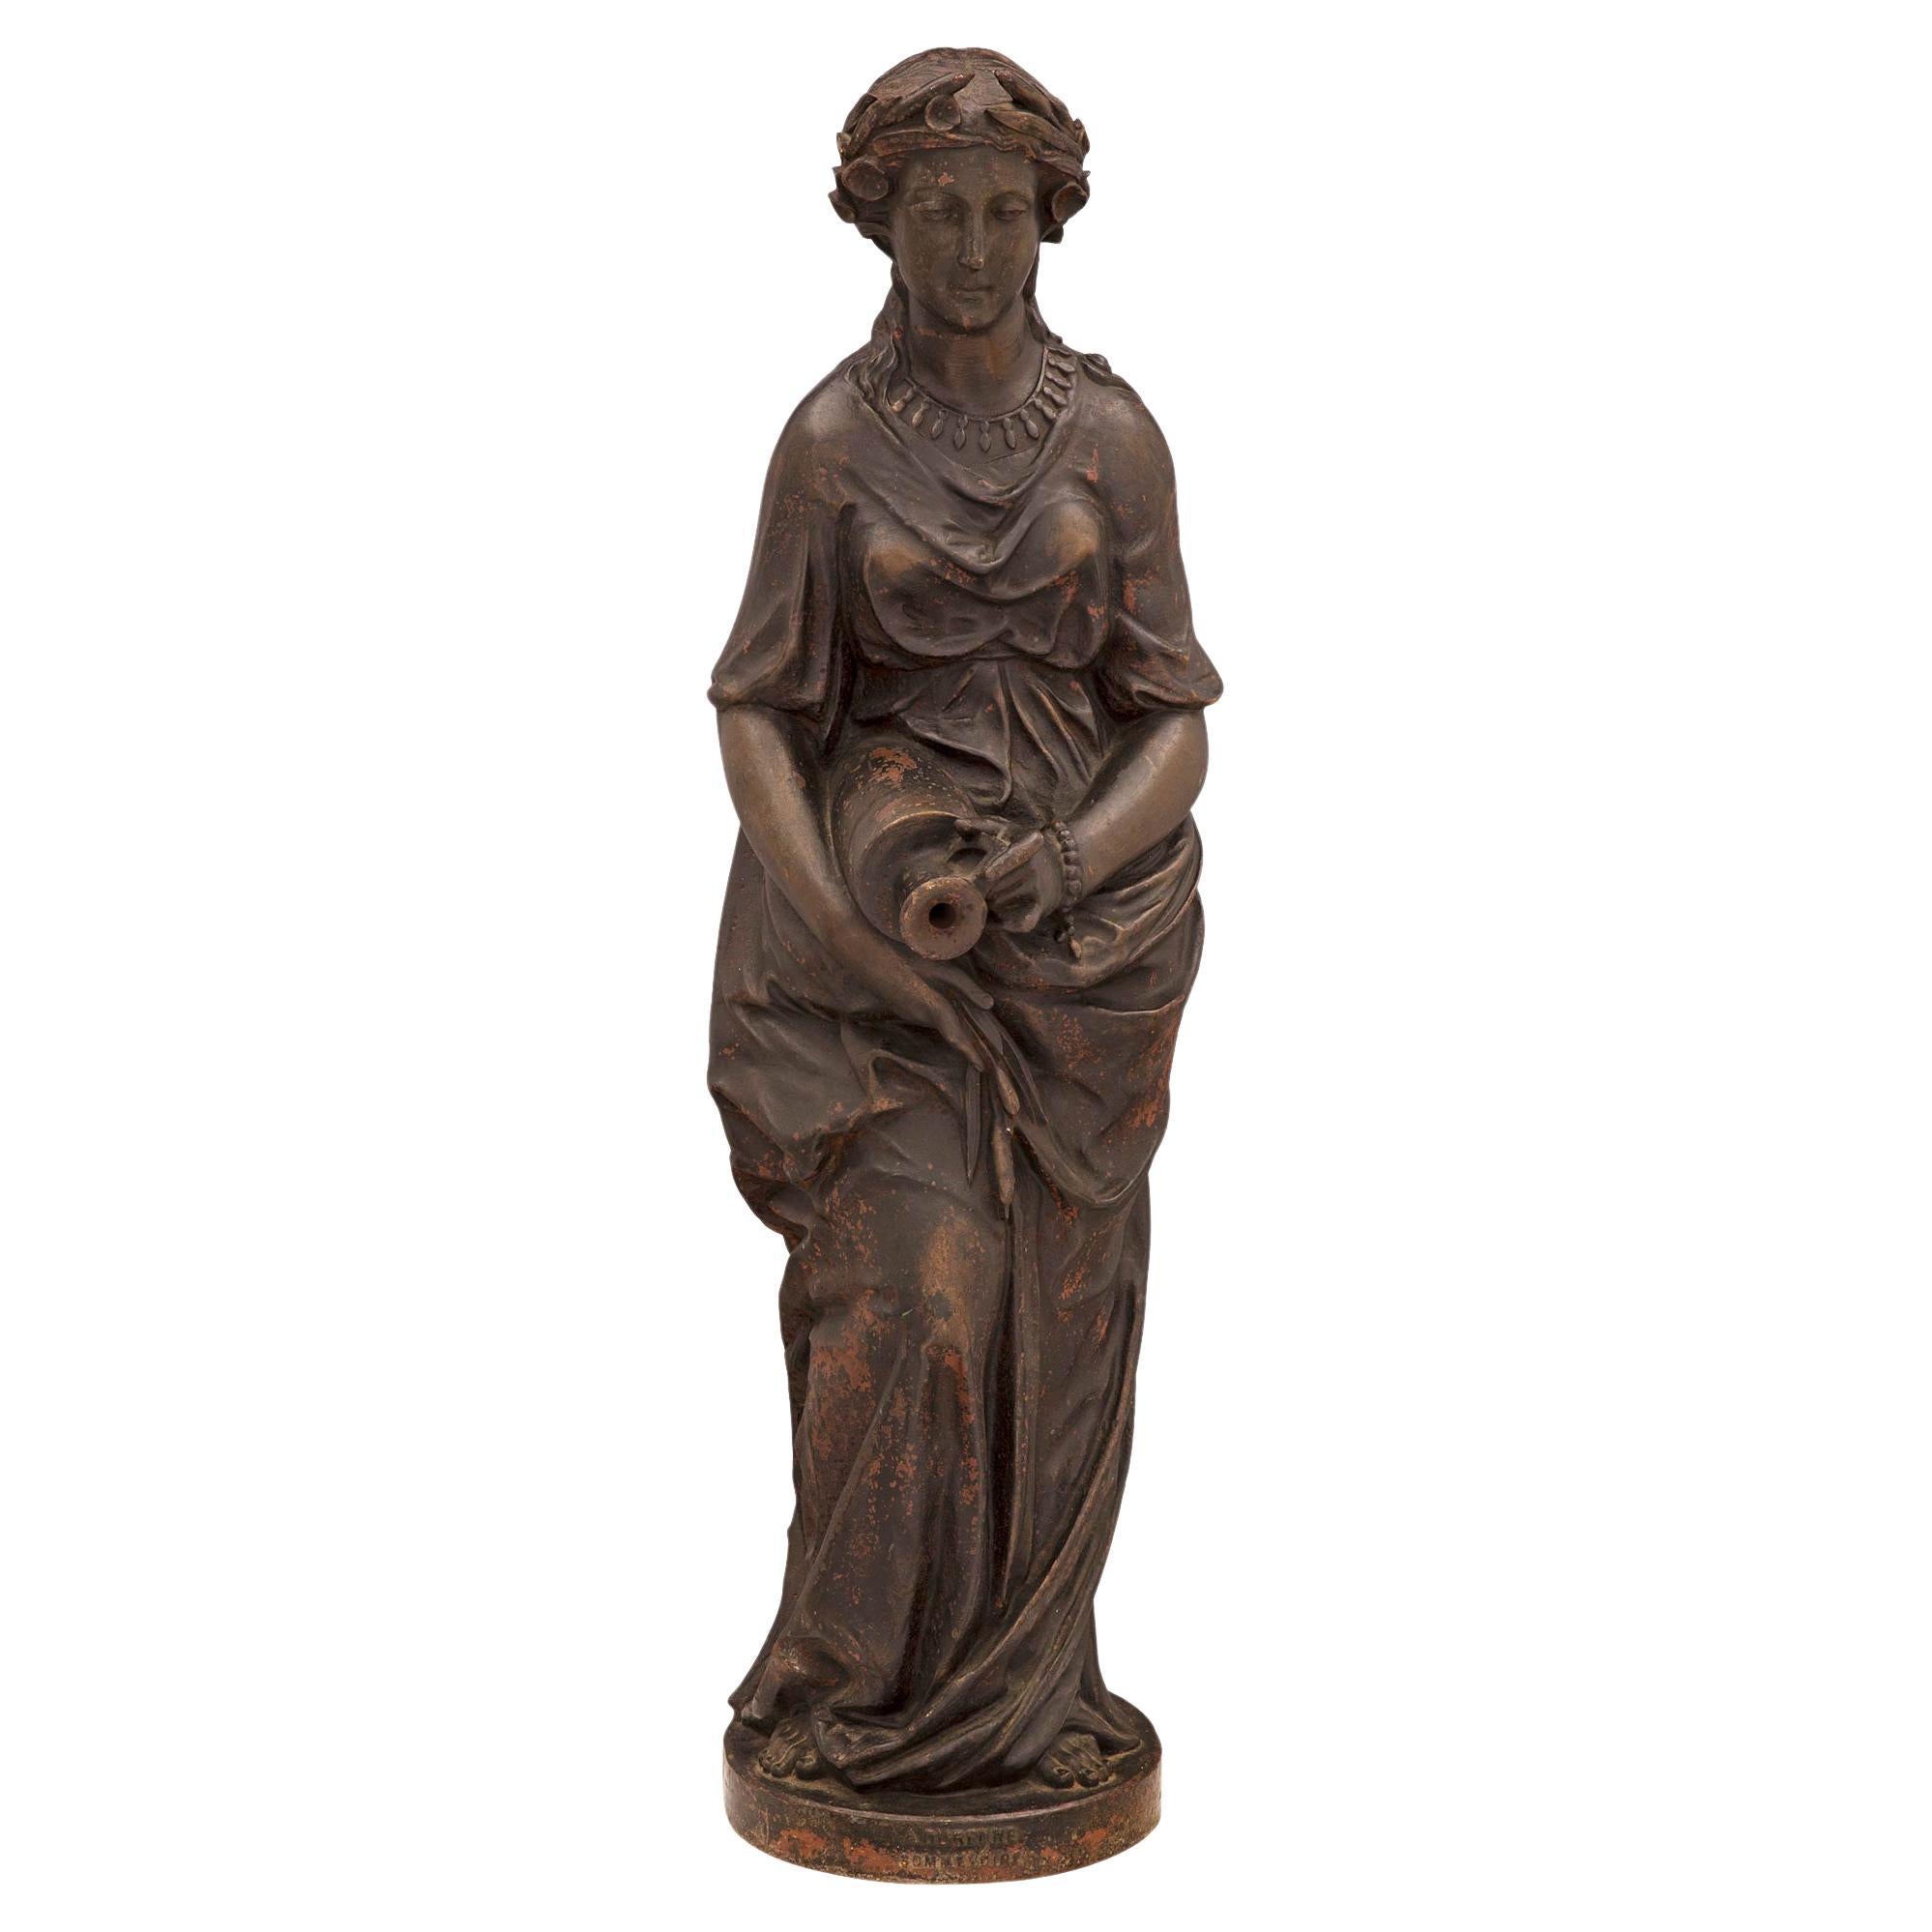 Superbe fontaine en fonte du XIXe siècle représentant une jeune fille, signée A. Durenne, Sommevoire. La fontaine est surélevée par une base circulaire où figure la signature. Ci-dessus, une belle jeune fille drapée dans un vêtement d'époque fluide